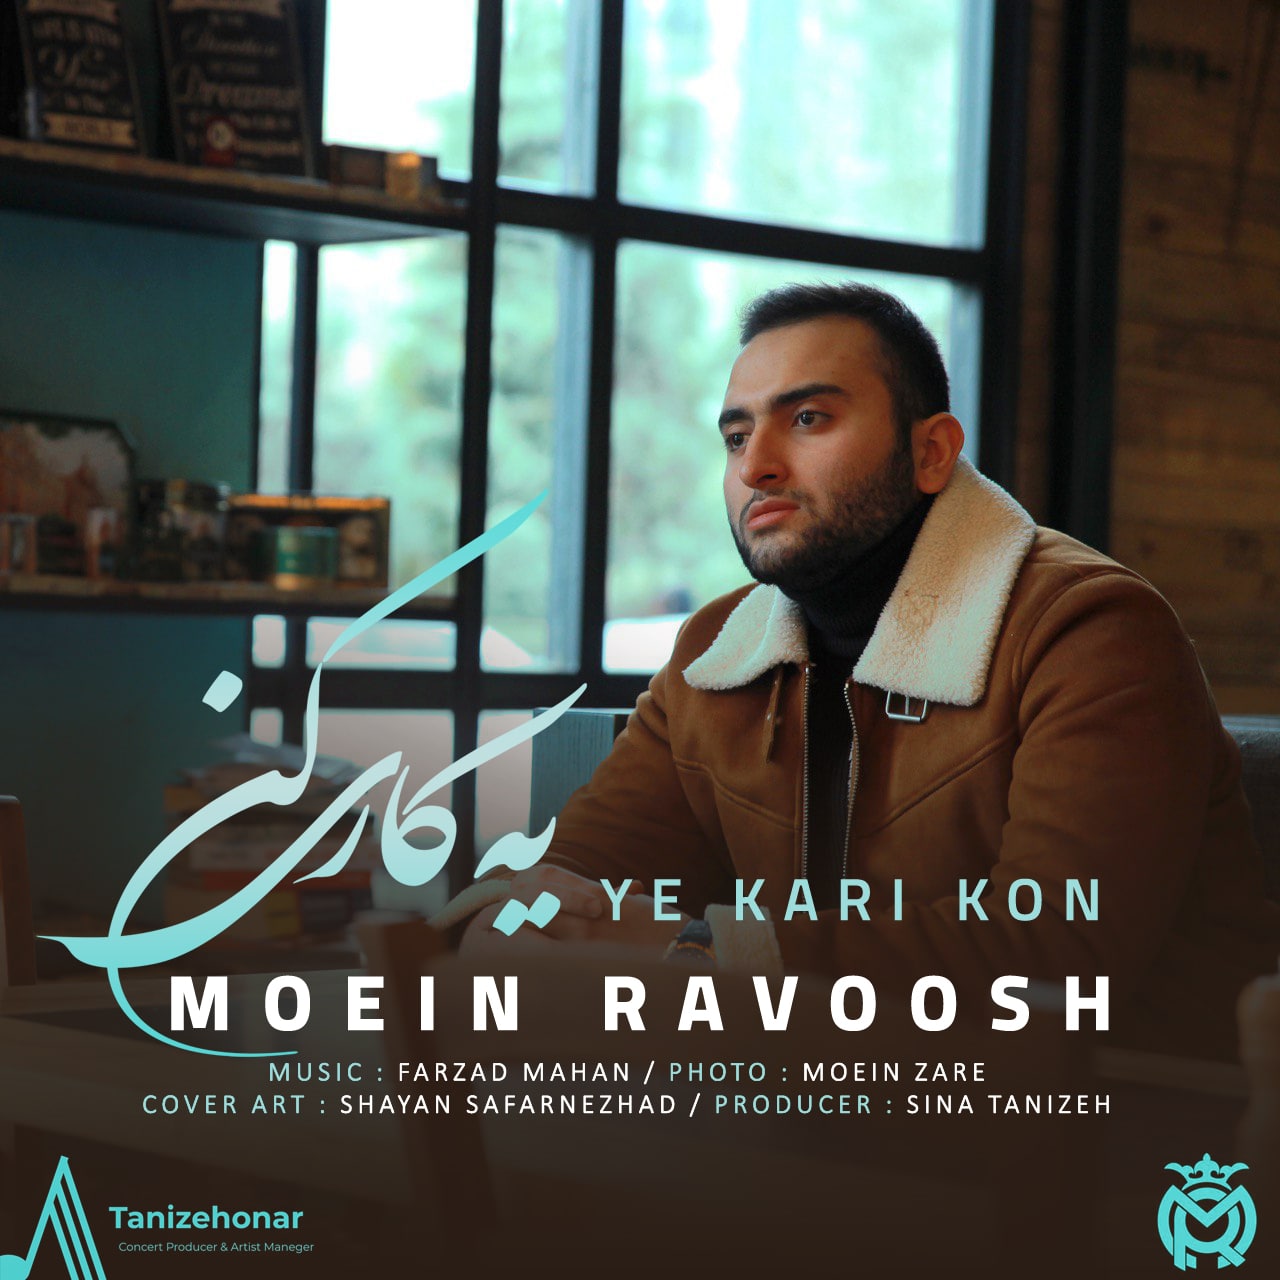  دانلود آهنگ جدید معین رووش - یه کاری کن | Download New Music By Moein Ravoosh - Ye Kari Kon